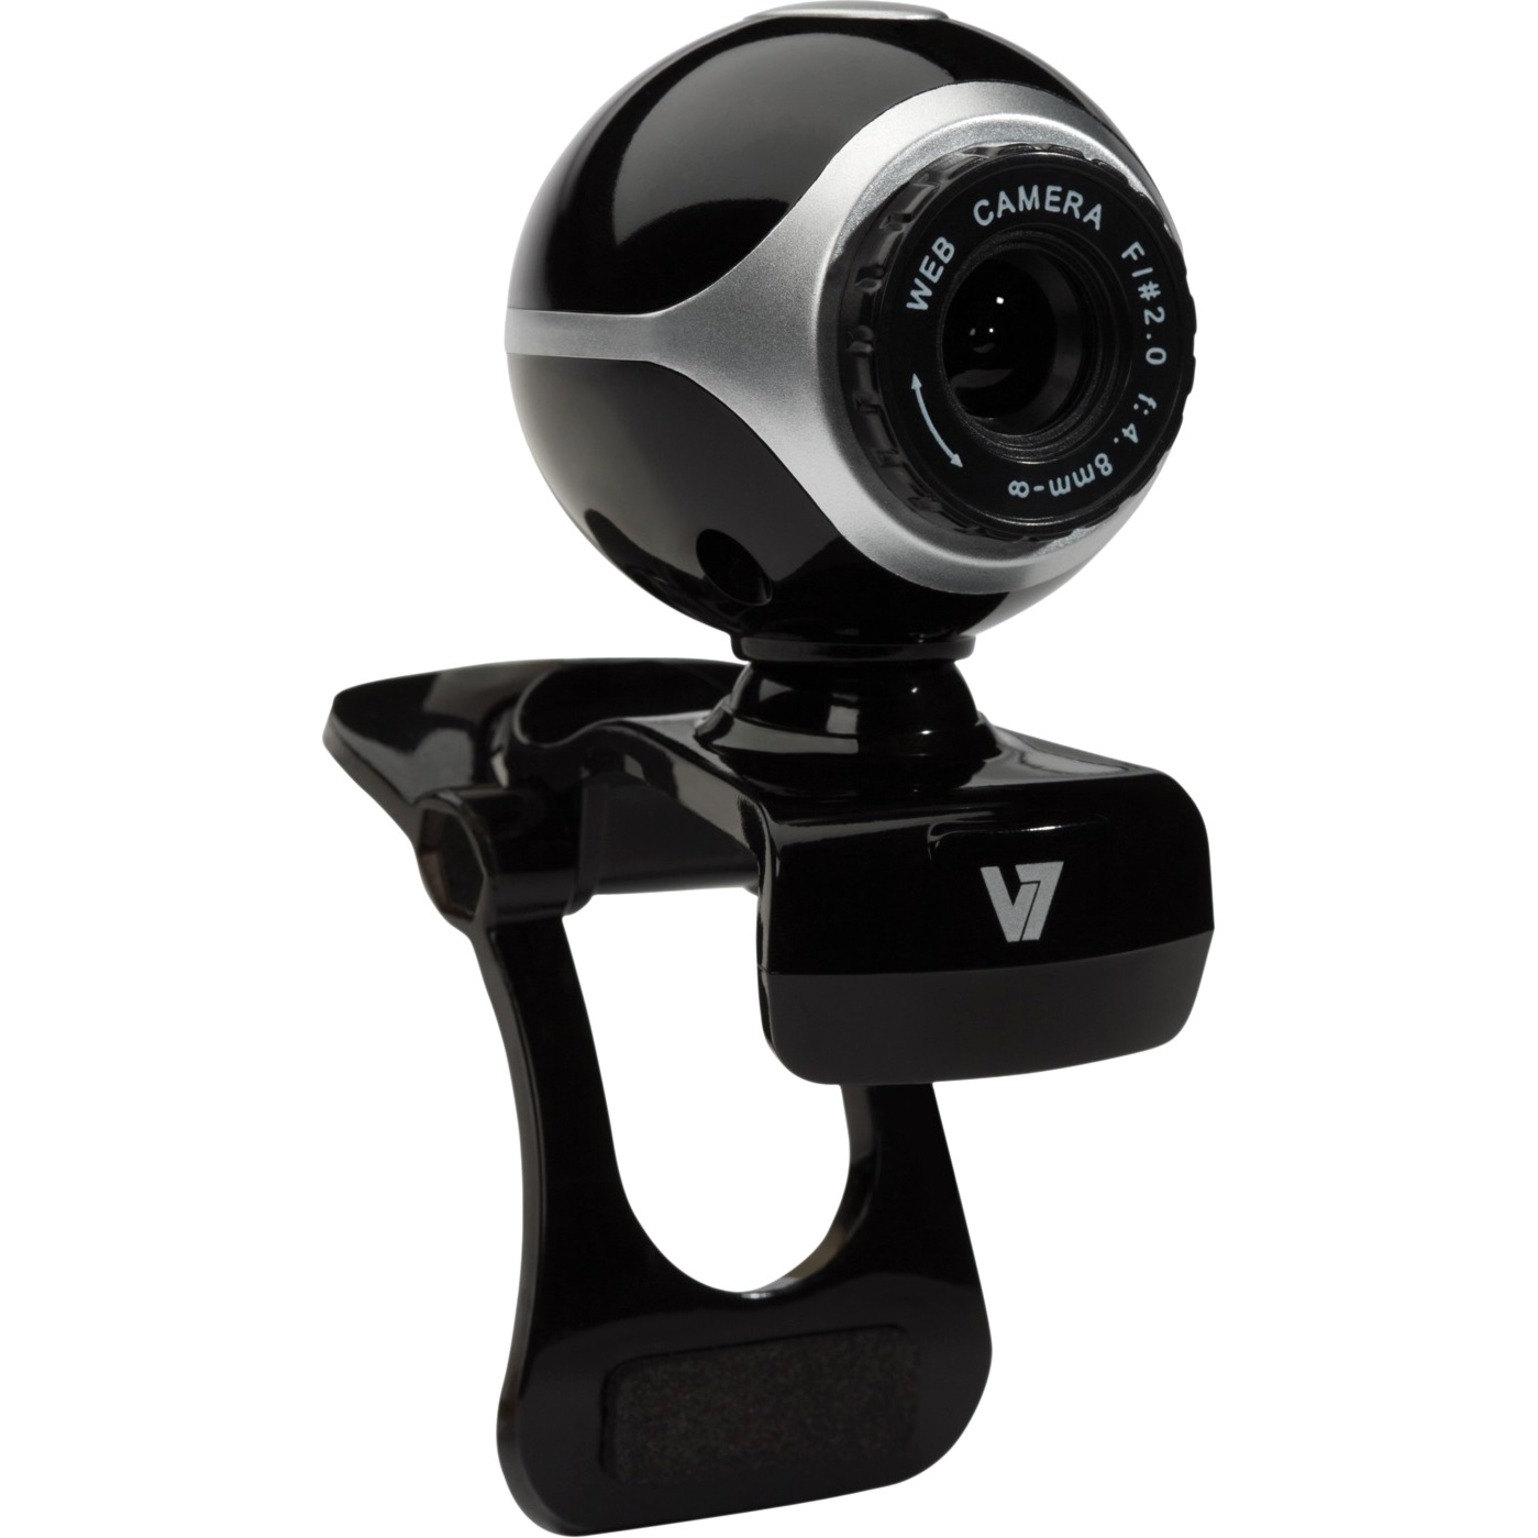 V7 CS0300 Webcam, 0.3 Megapixel, 30 fps, Black, Silver, USB 2.0 - image 3 of 4